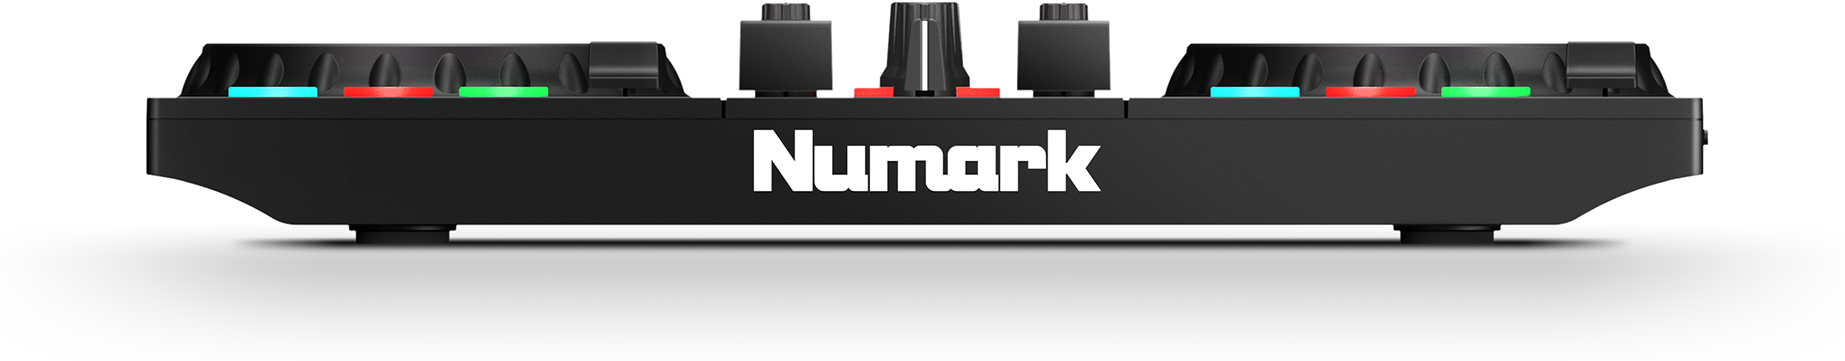 Numark Party Mix II - DJMania